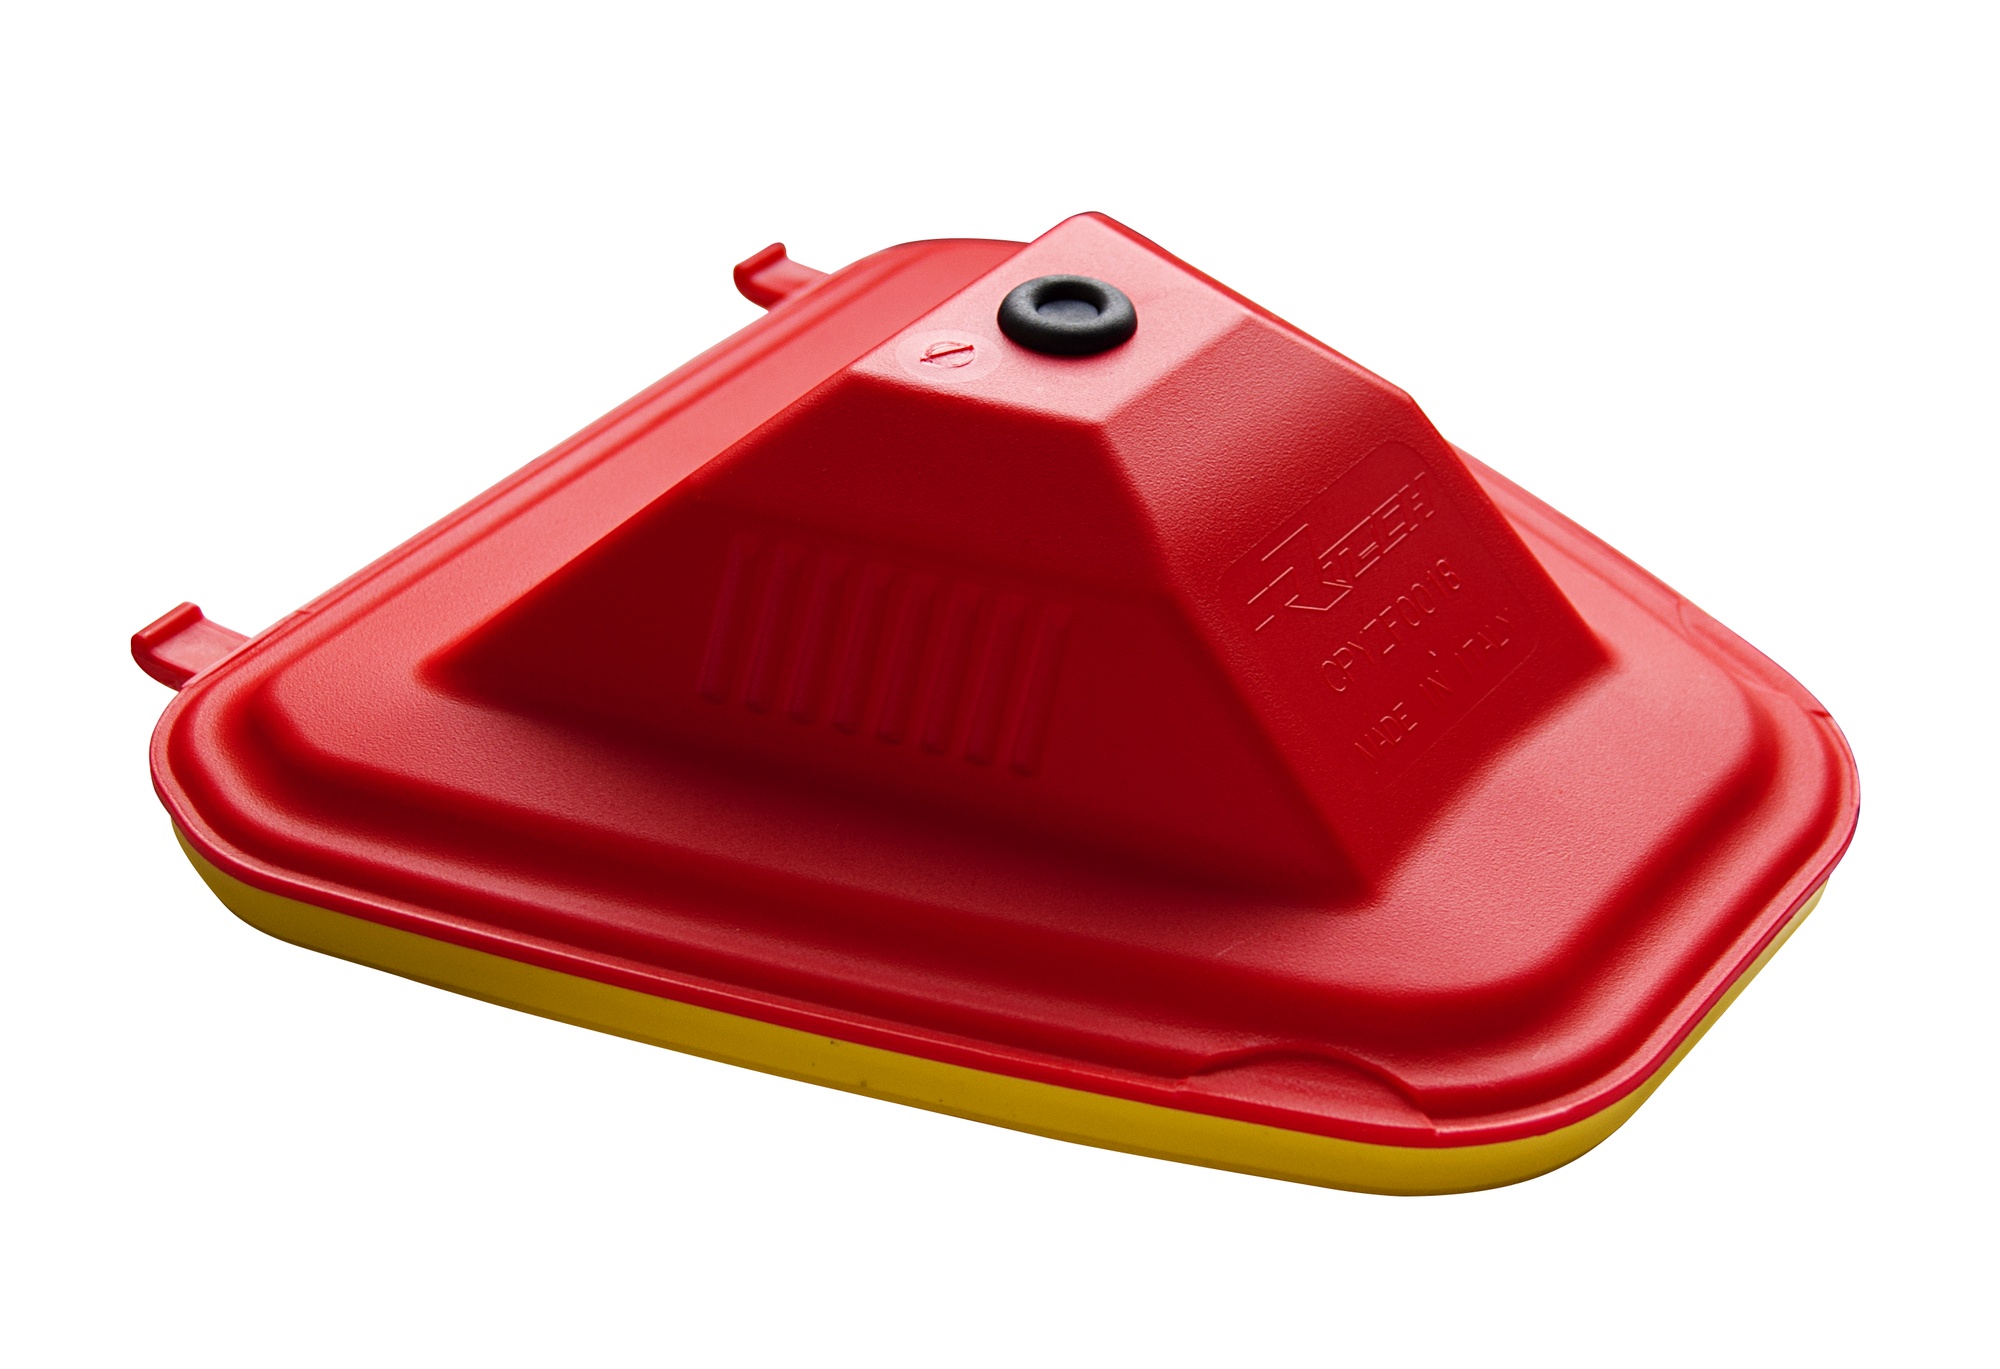 Obrázek produktu vrchní kryt vzduchového filtru Yamaha, RTECH (červeno-žlutý)